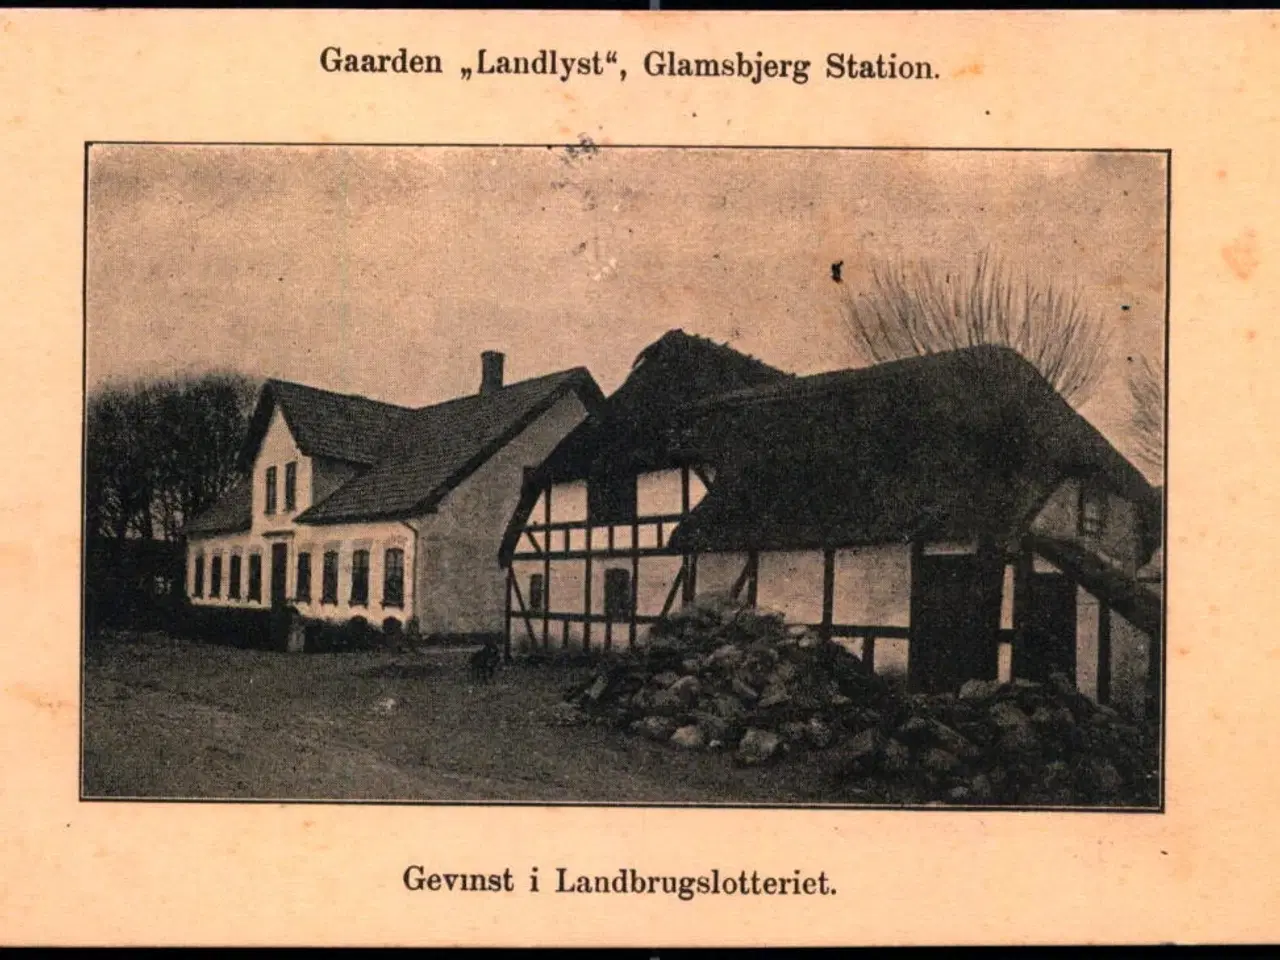 Billede 1 - Gaarden "Landlyst" Glamsbjerg Station - Gevinst i Landbrugslotteriet - u/n - Brugt